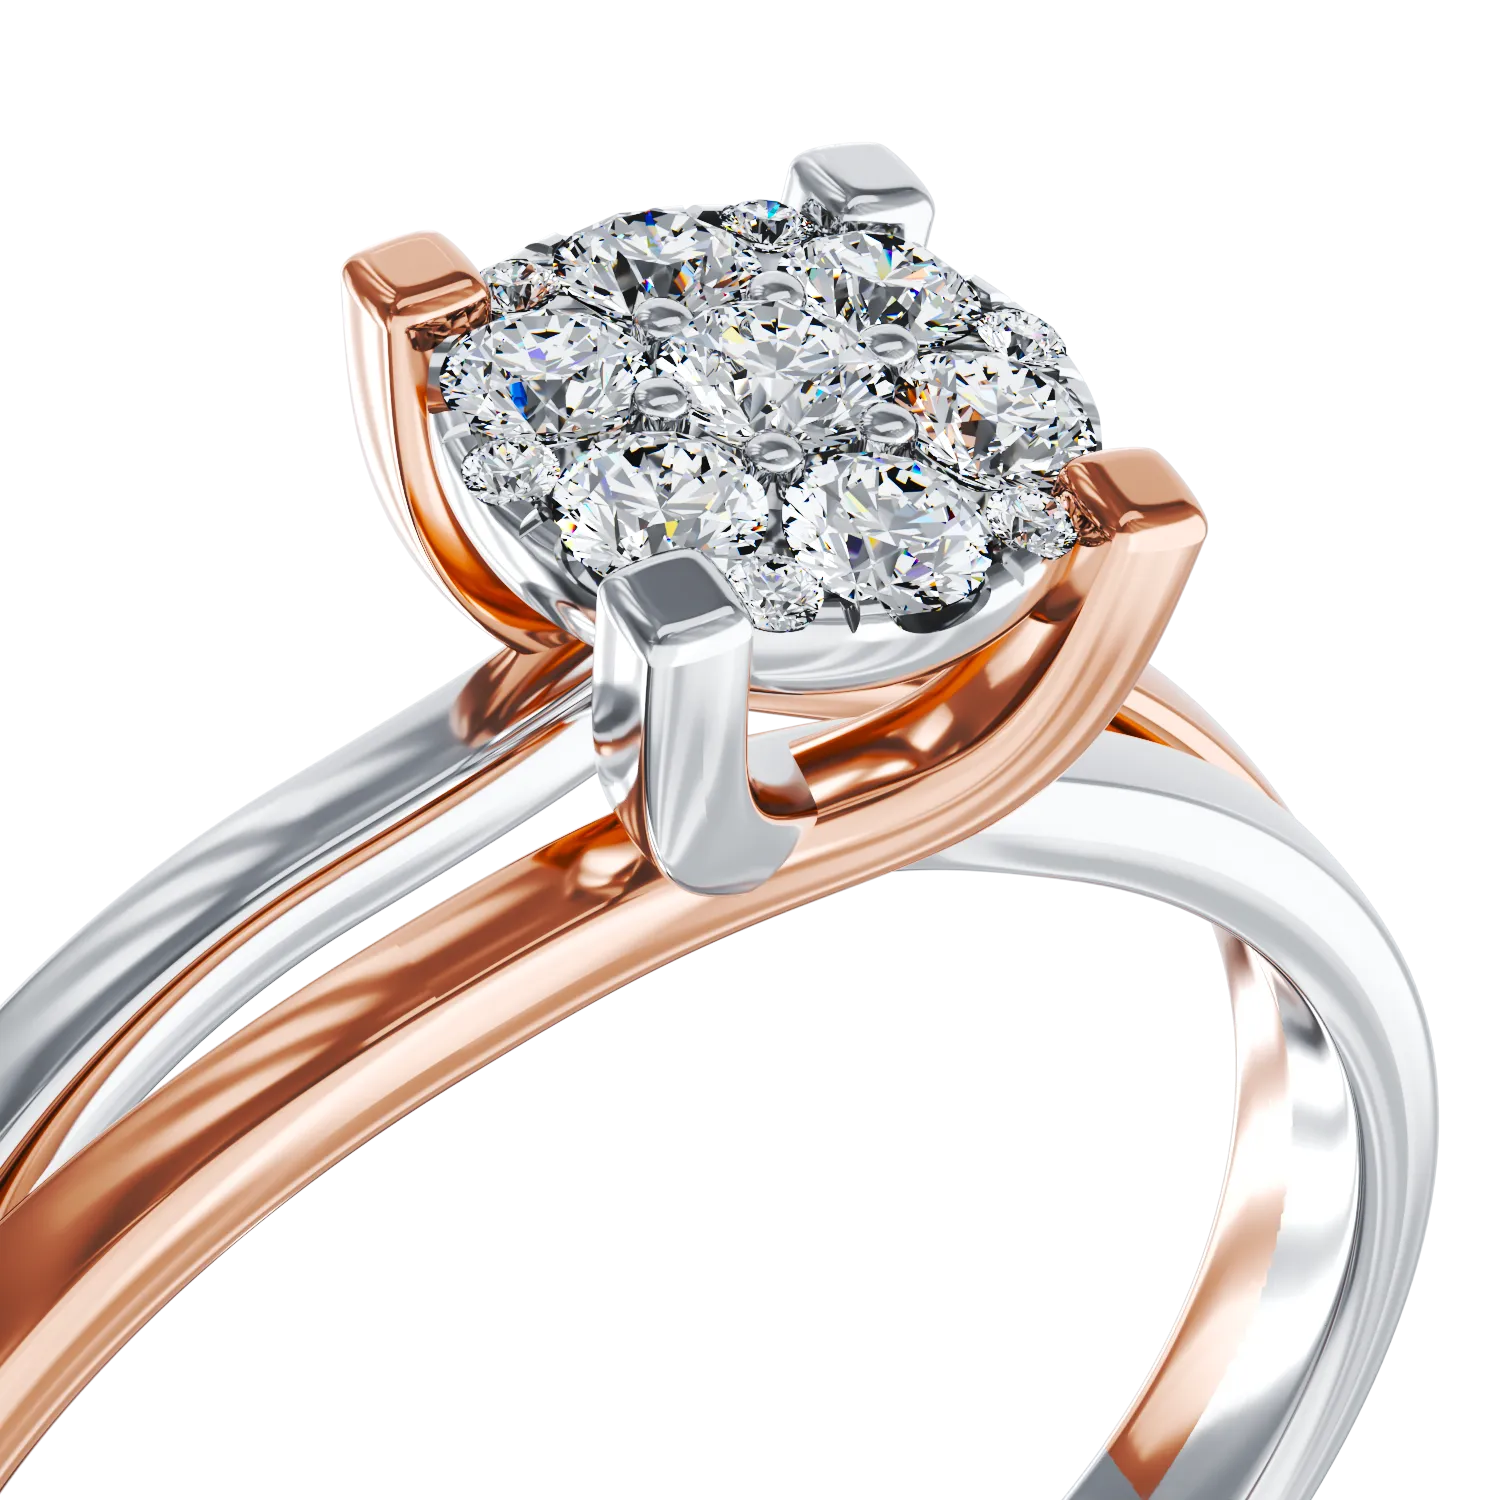 Eljegyzési gyűrű 18K-os fehér-rózsaszín aranyból 0.24ct gyémánttal. Gramm: 3,5